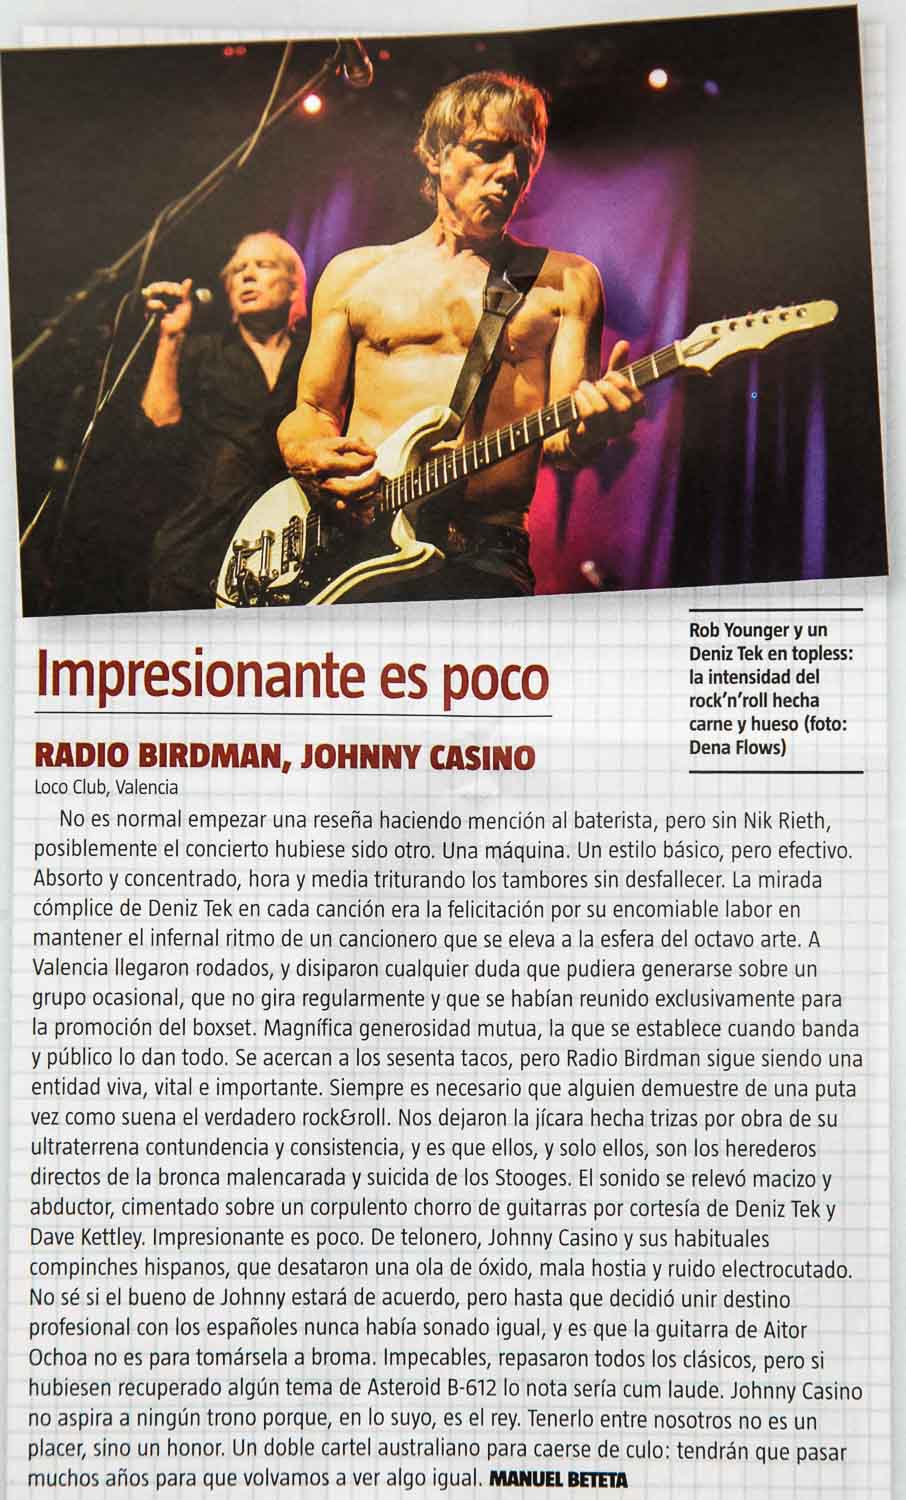 Crónica del concierto de Radio Birdman y Johnny Casino en el Loco Club de Valencia, por Manuel Beteta